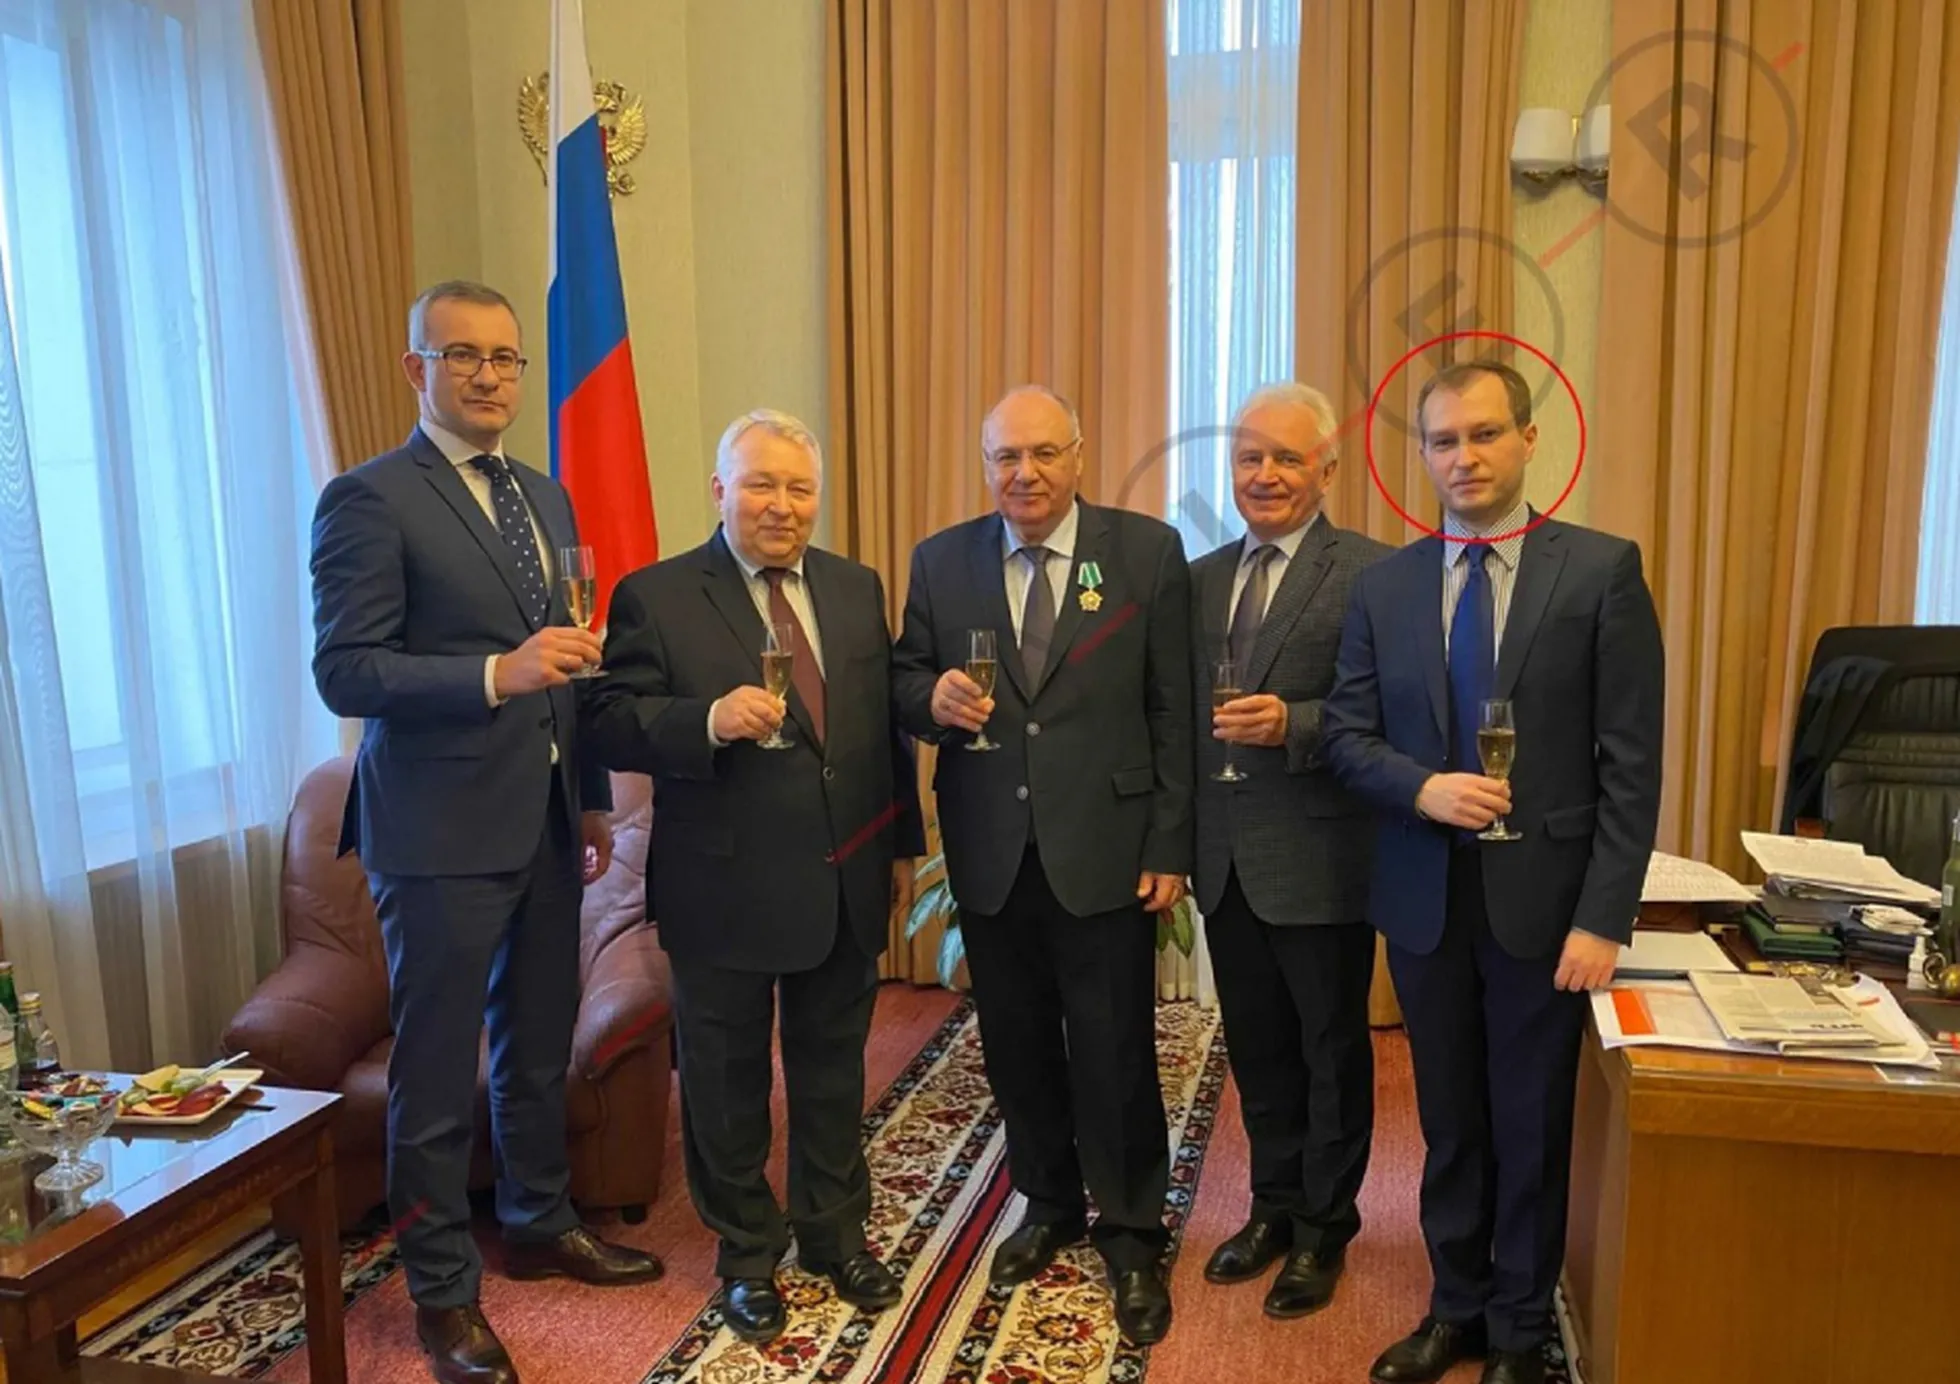 Foto uzņemts 2020.gada februārī, atzīmējot Draudzības ordeņa piešķiršanu Ārvalstu izlūkdienesta pulkvedim Jevgēņijam Umerenko (centrā). Viņš ilgstoši bija atbildīgs par Kremļa interešu realizēšanu Baltijā. Pirmais no labās ir viņa tā brīža vietnieks Vadims Smirnovs.